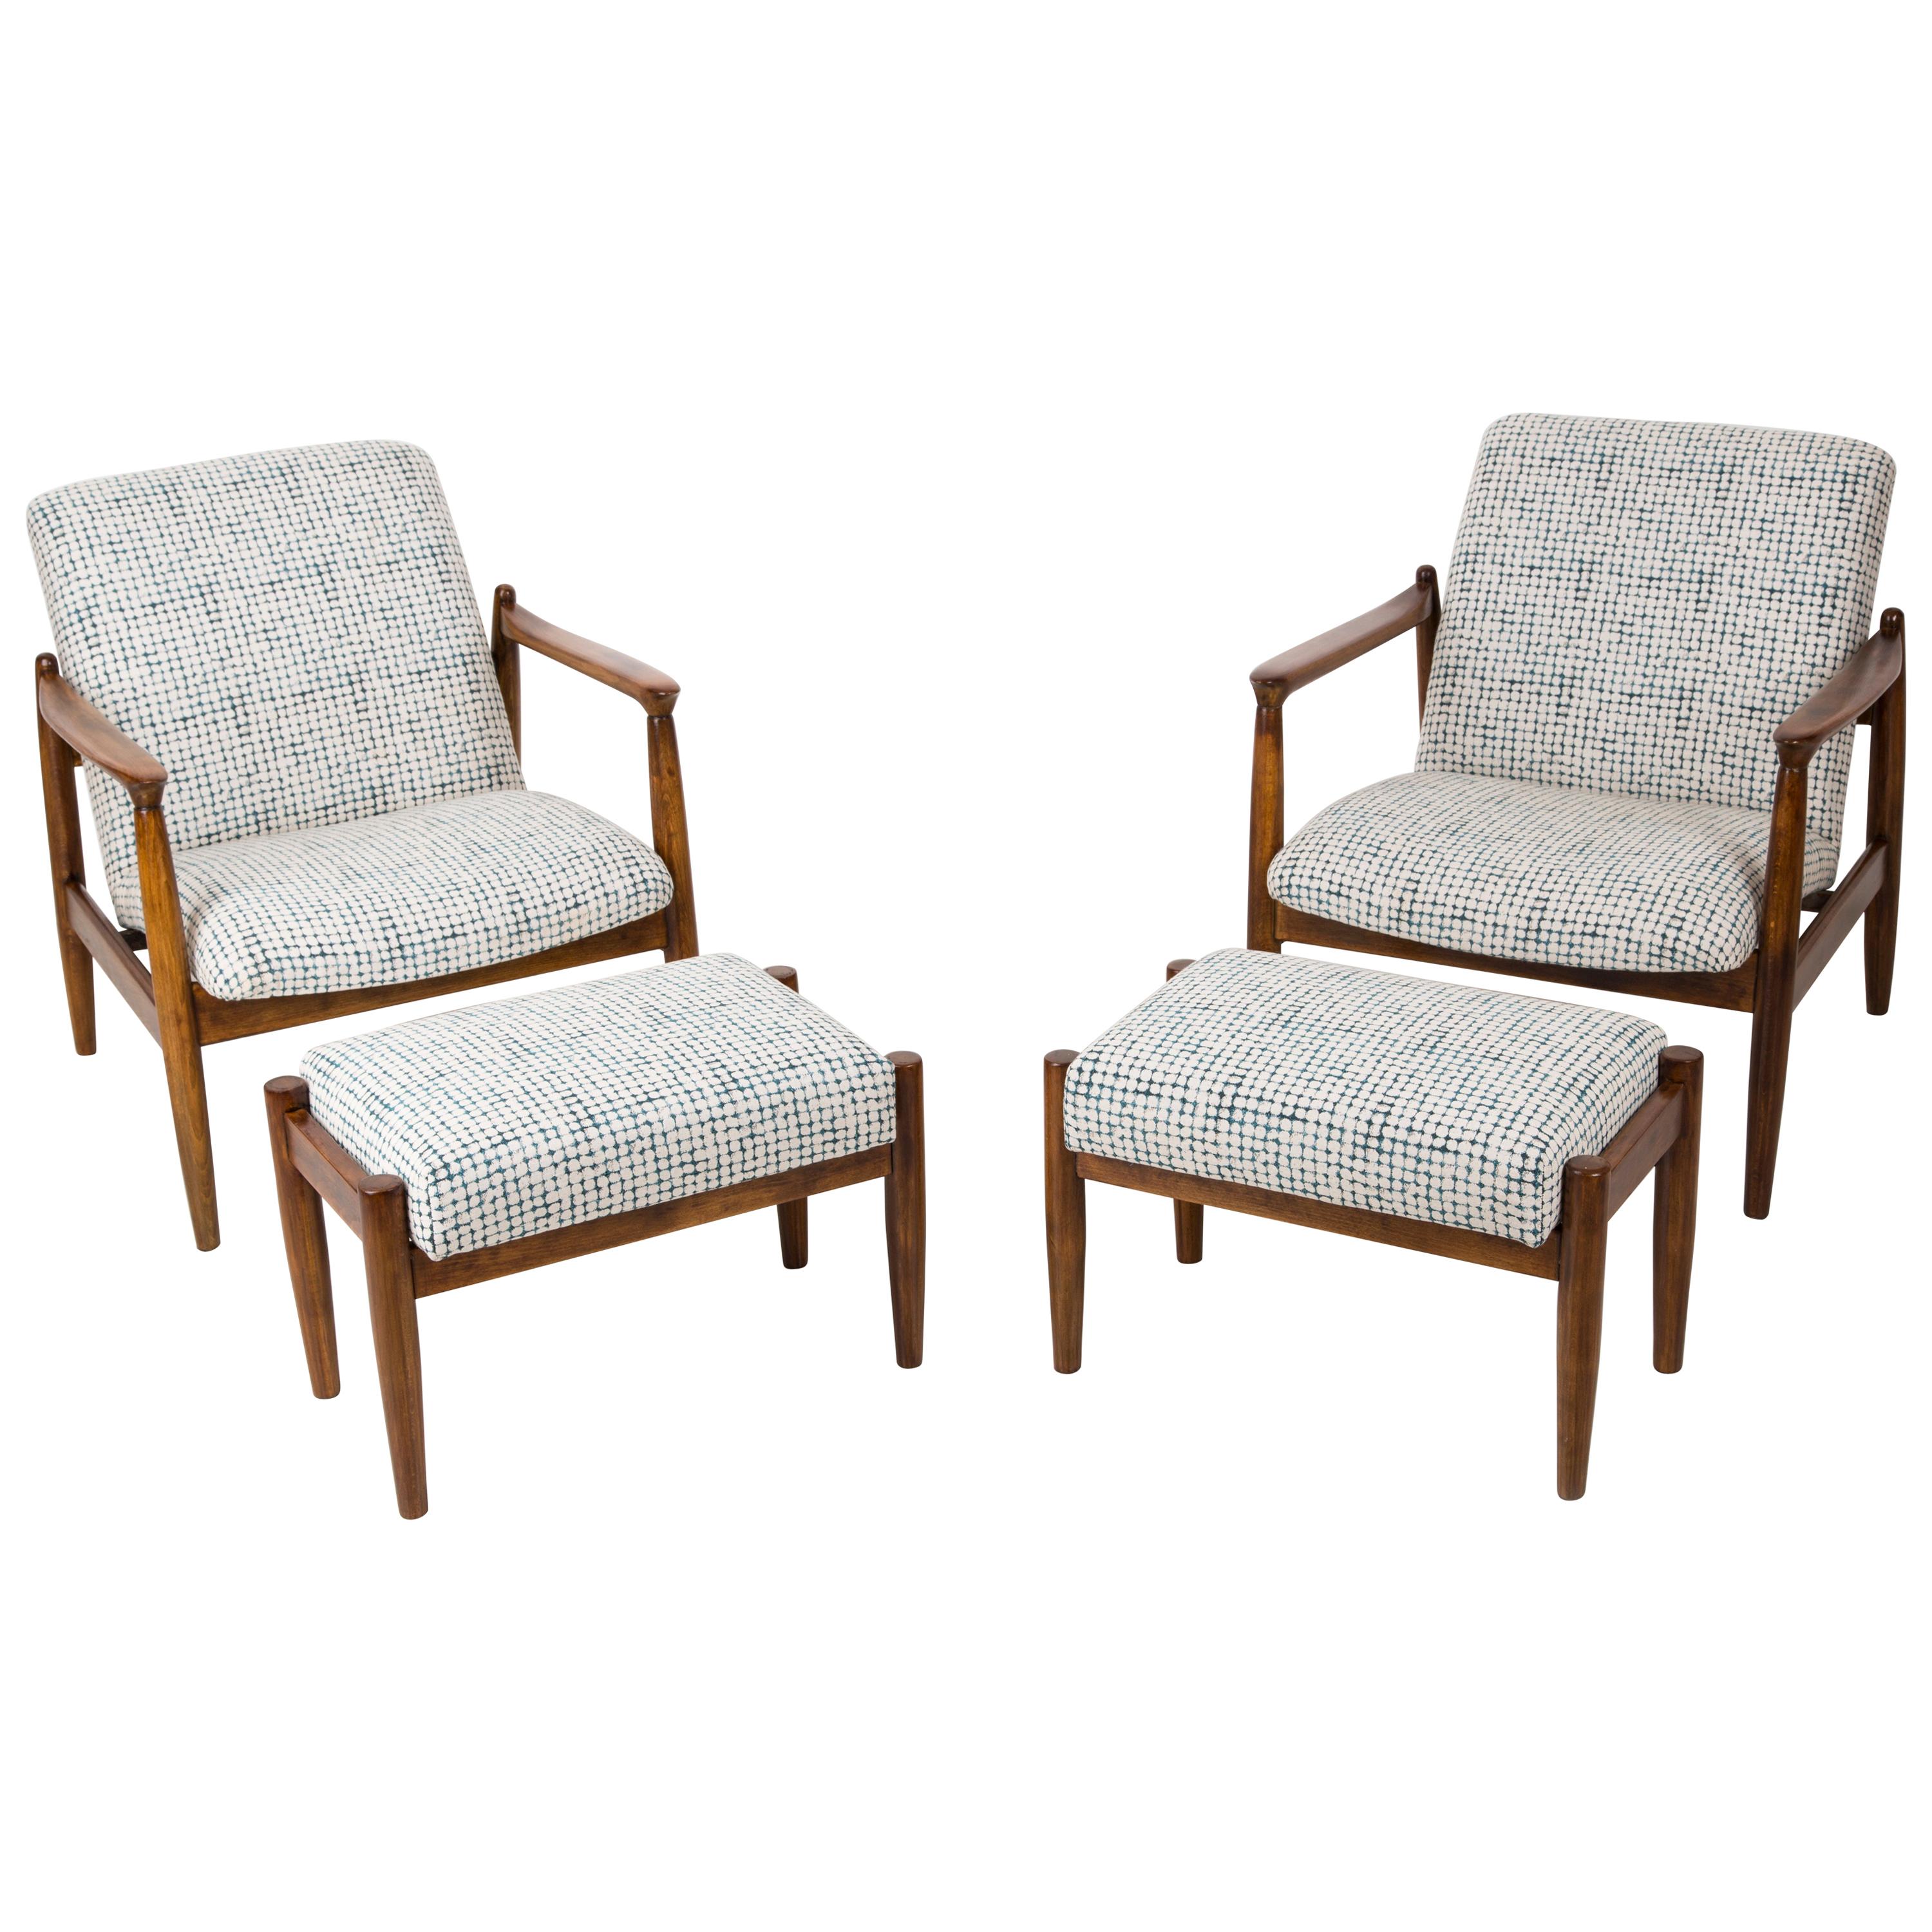 Set aus weißen und aquafarbenen Vintage-Sesseln und Hockern, Edmund Homa, 1960er Jahre